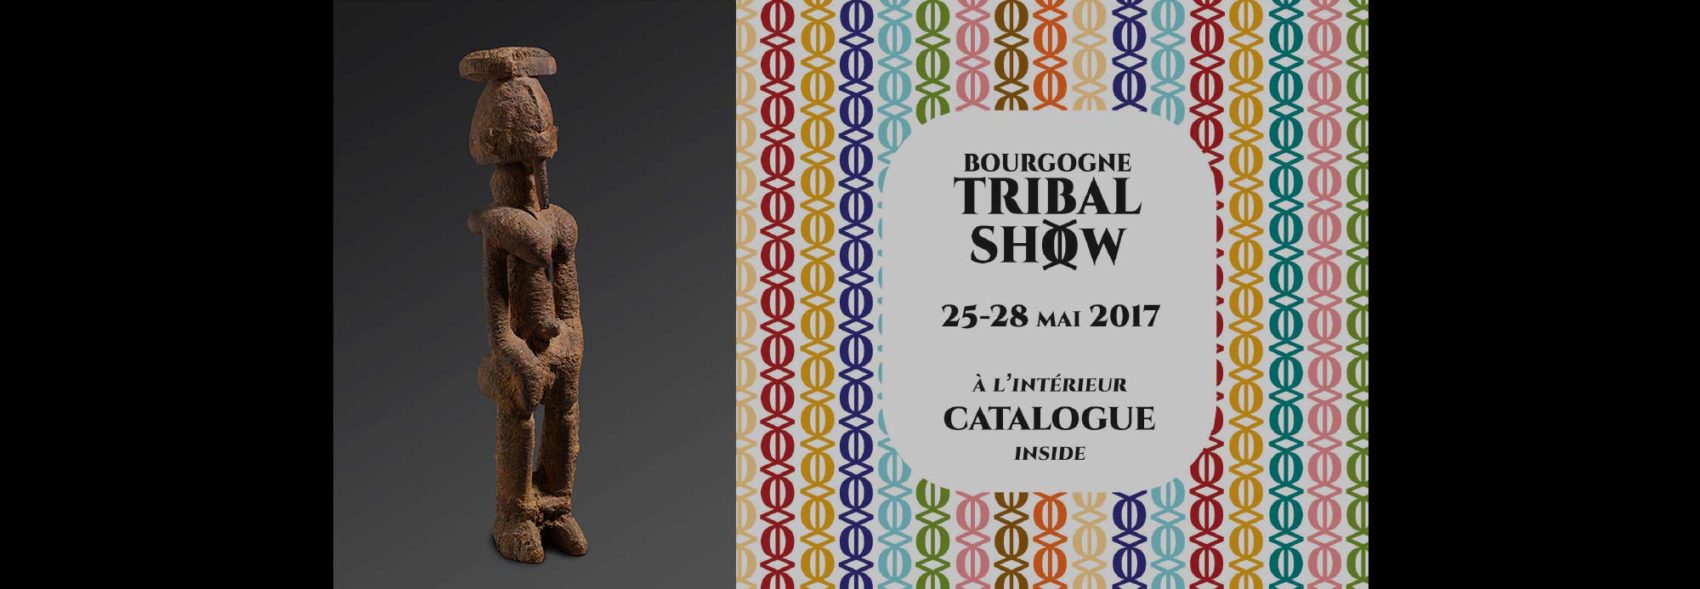 David Serra Fines Tribal Art <br/> Bourgogne Tribal Show